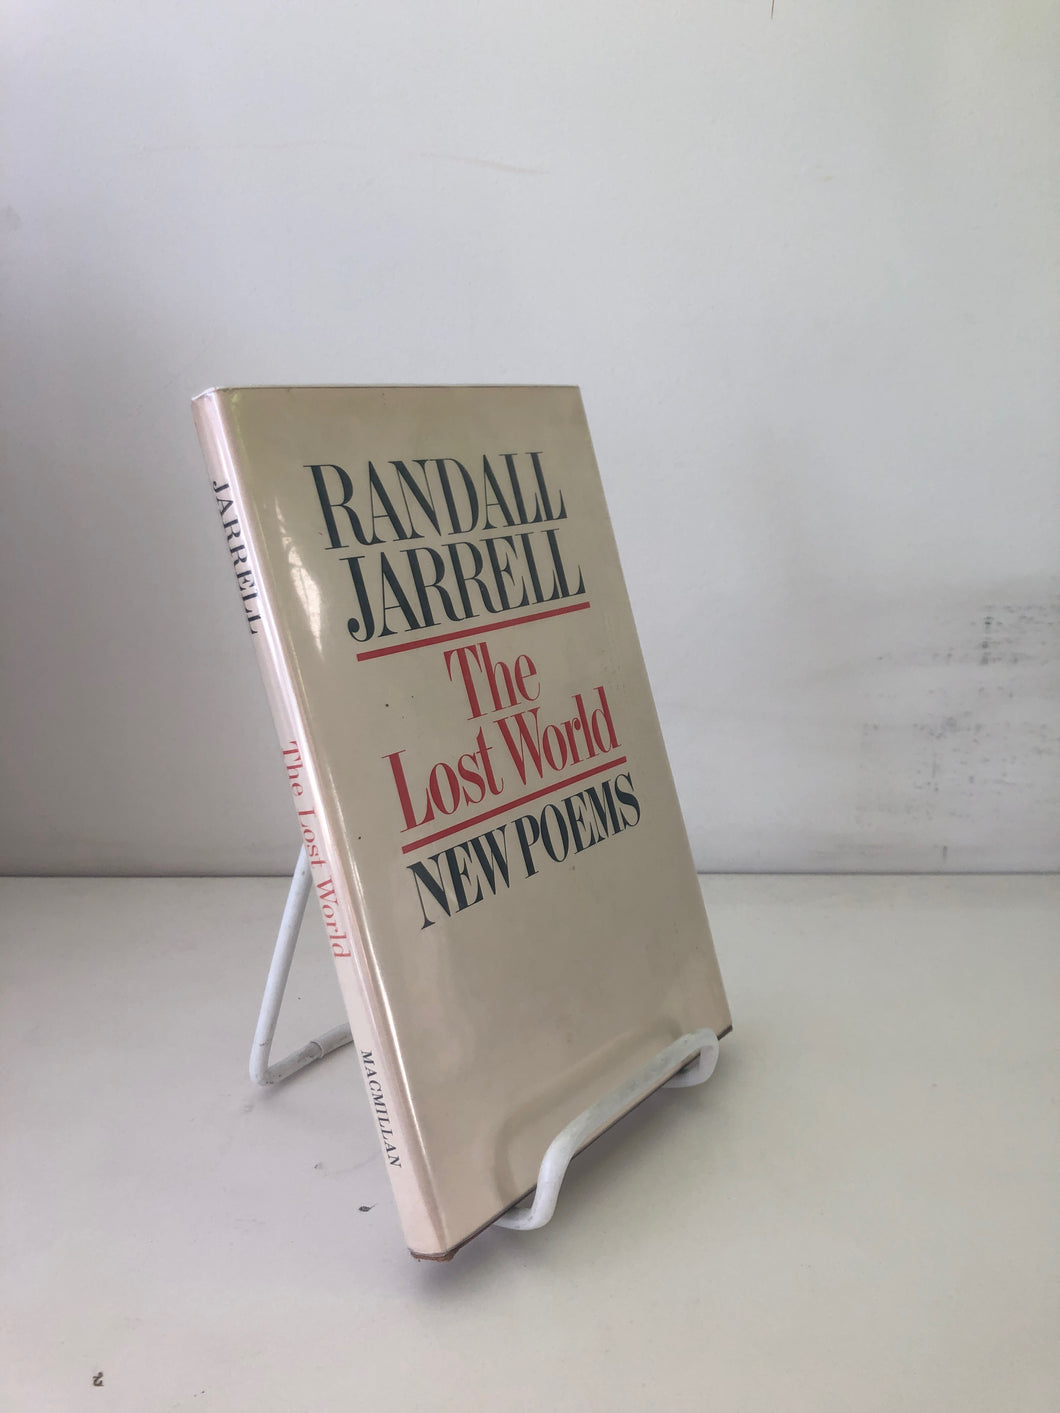 Jarrell, Randall: The Lost World